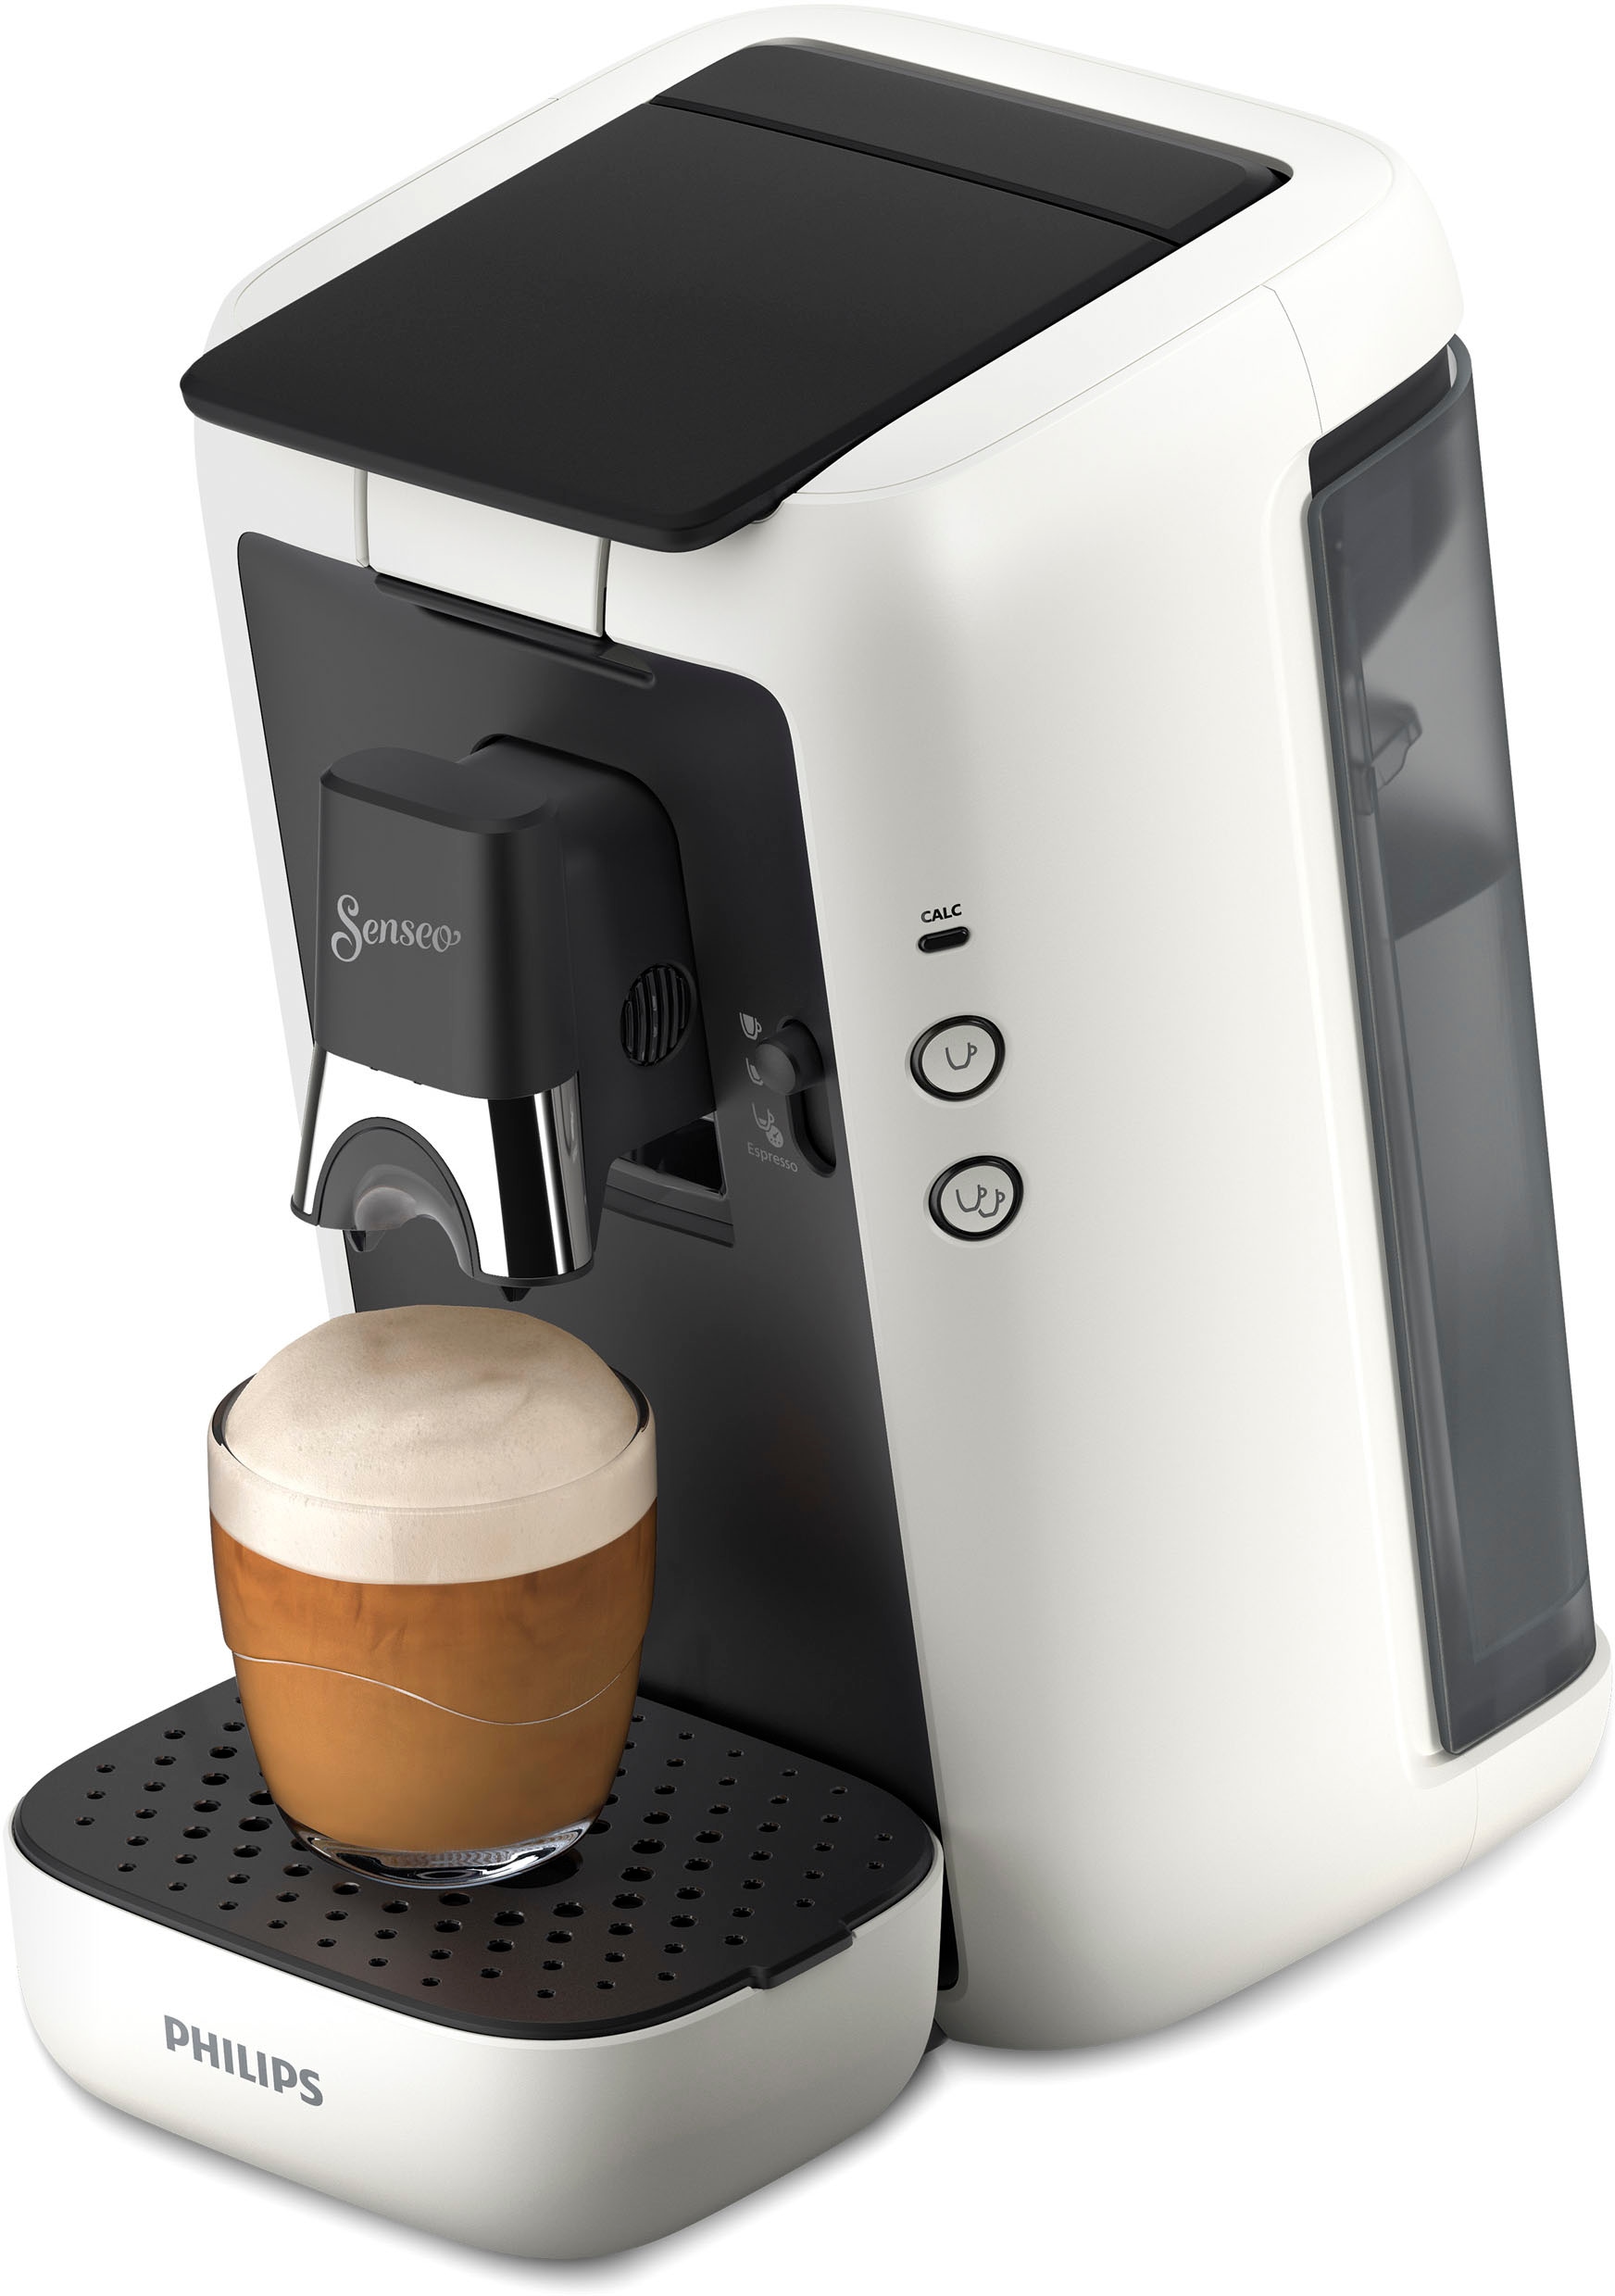 +3 14,- inkl. bei Philips Gratis-Zugaben Plastik, 80% Senseo im € kaufen »Maestro von Kaffeespezialitäten«, OTTO CSA260/10, Wert aus UVP recyceltem Memo-Funktion, jetzt Kaffeepadmaschine